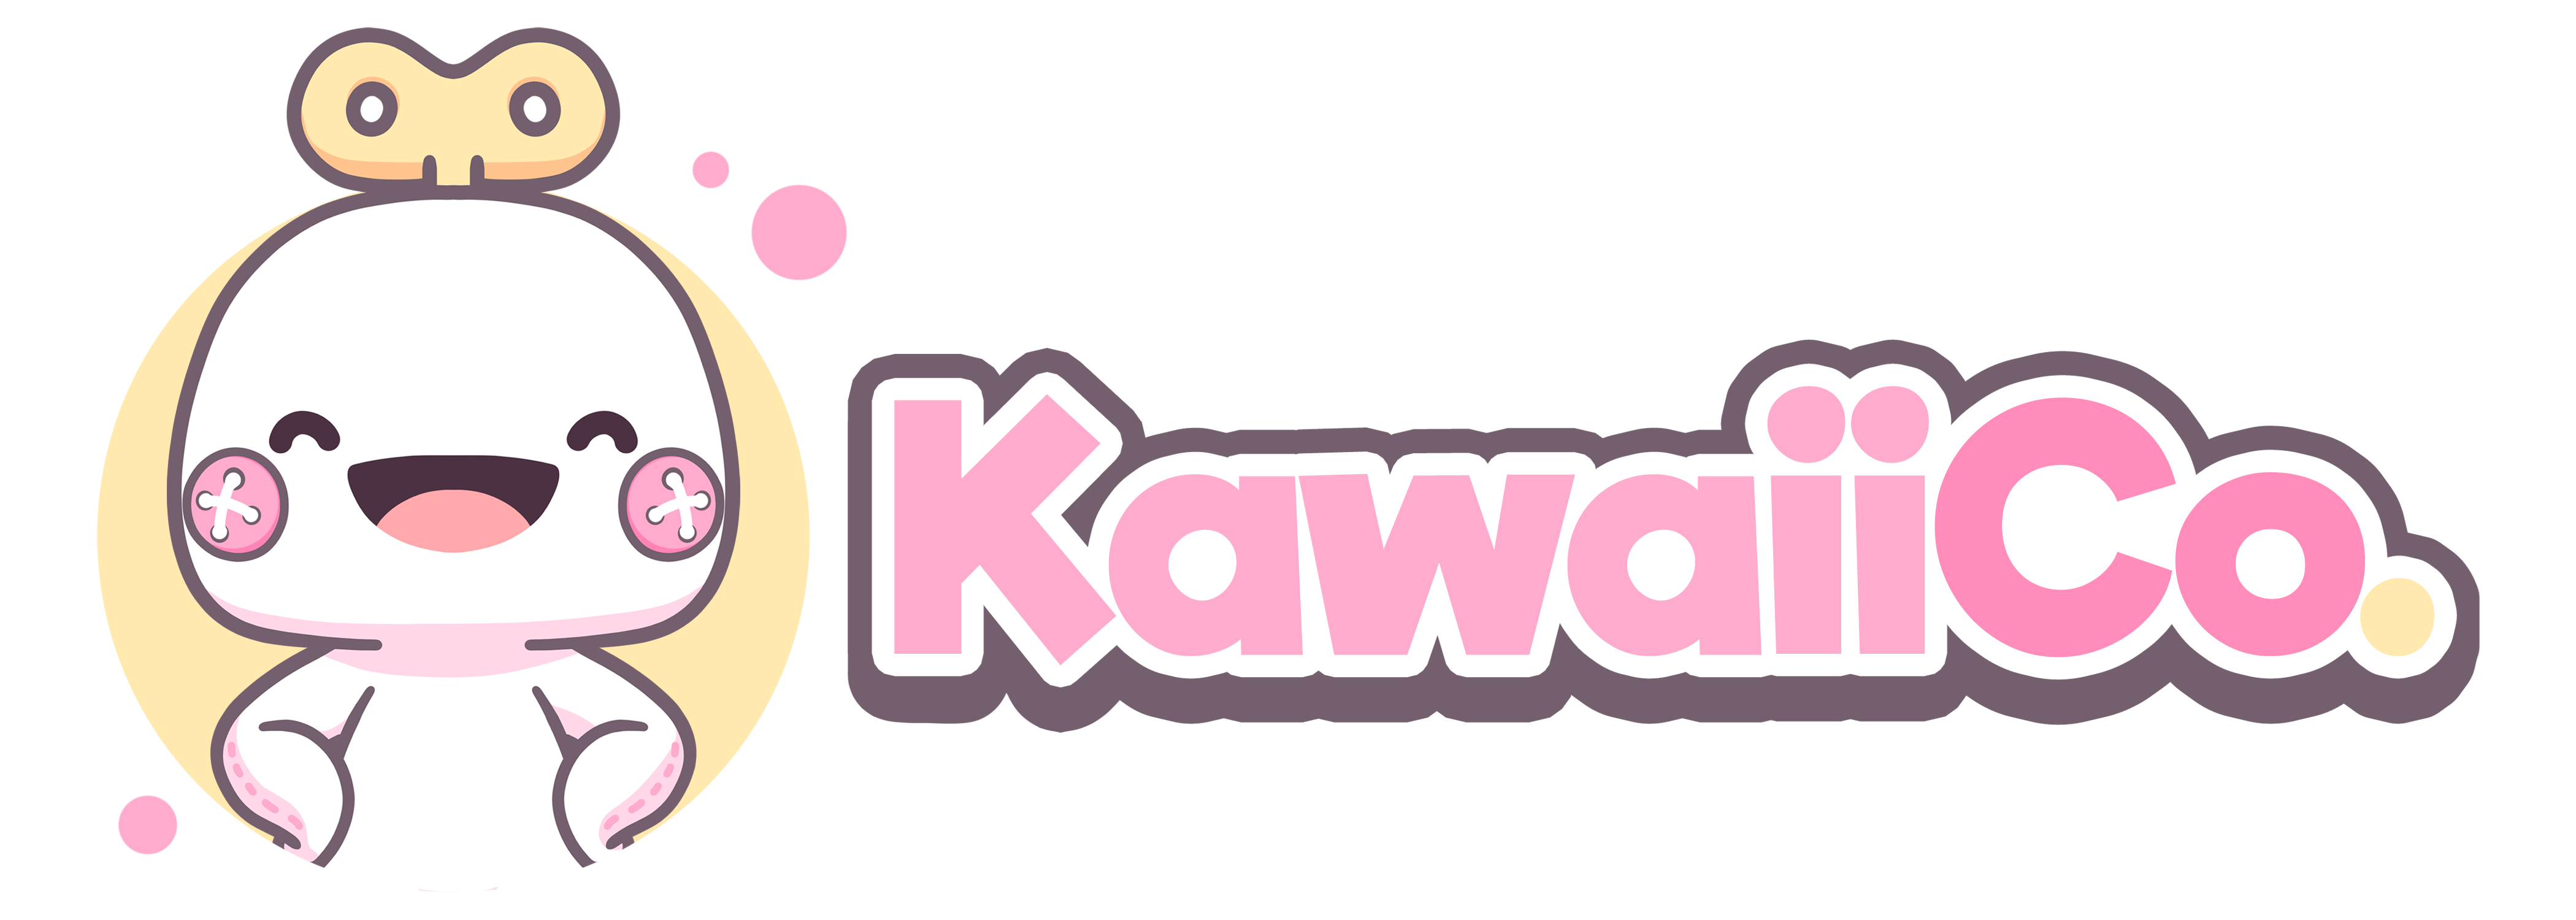 Kawaii Co.